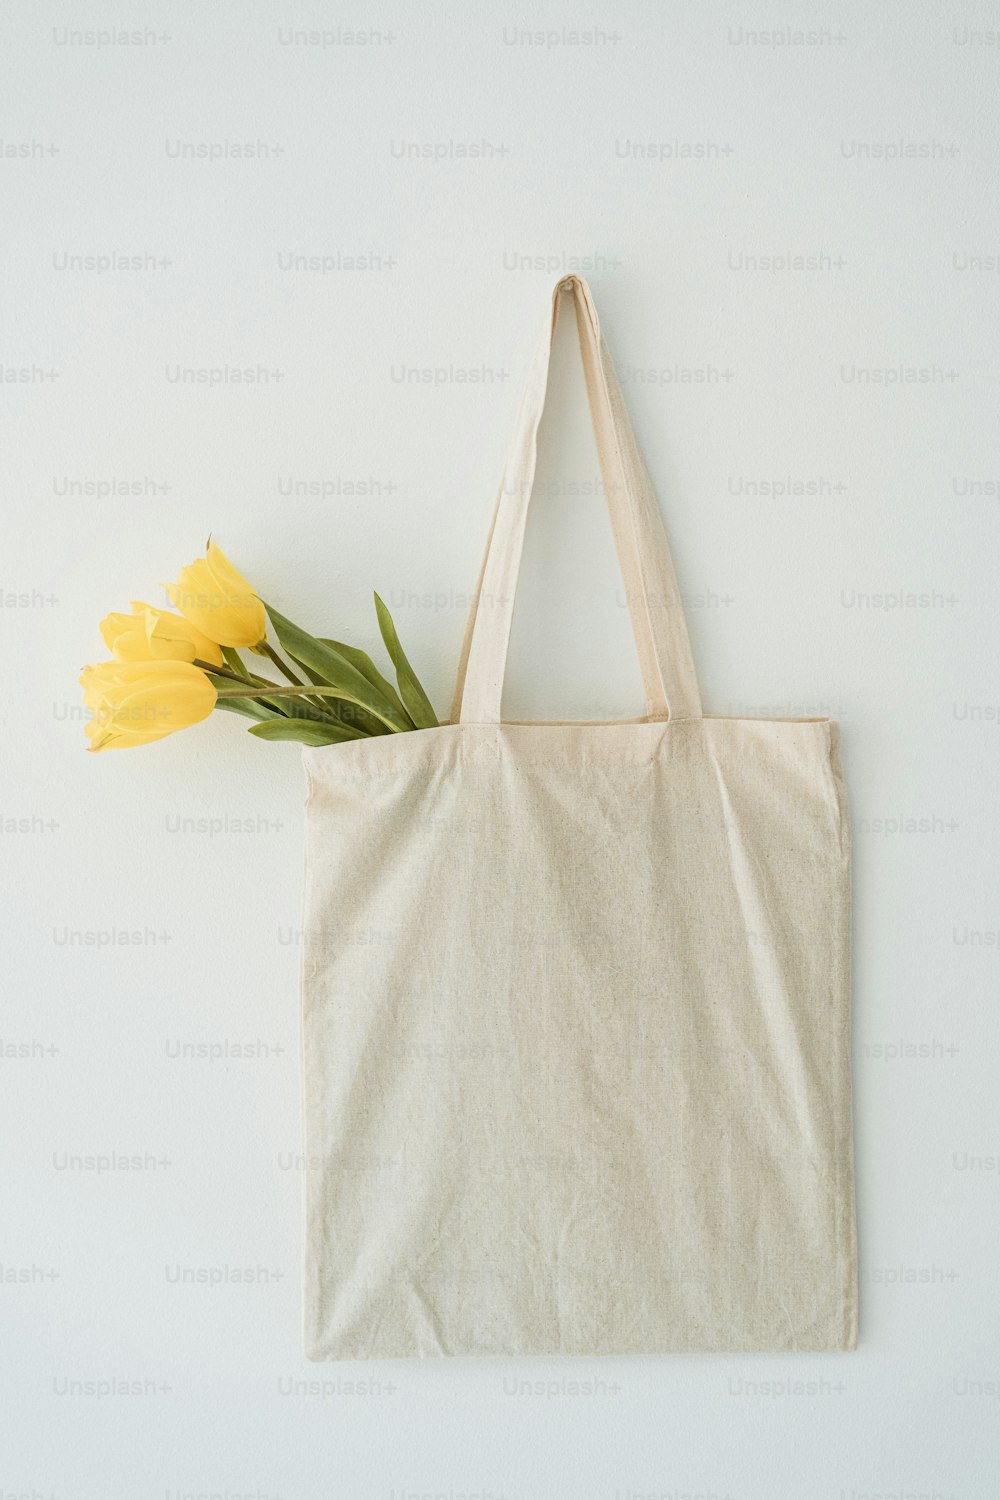 um saco com uma flor amarela sobre ele